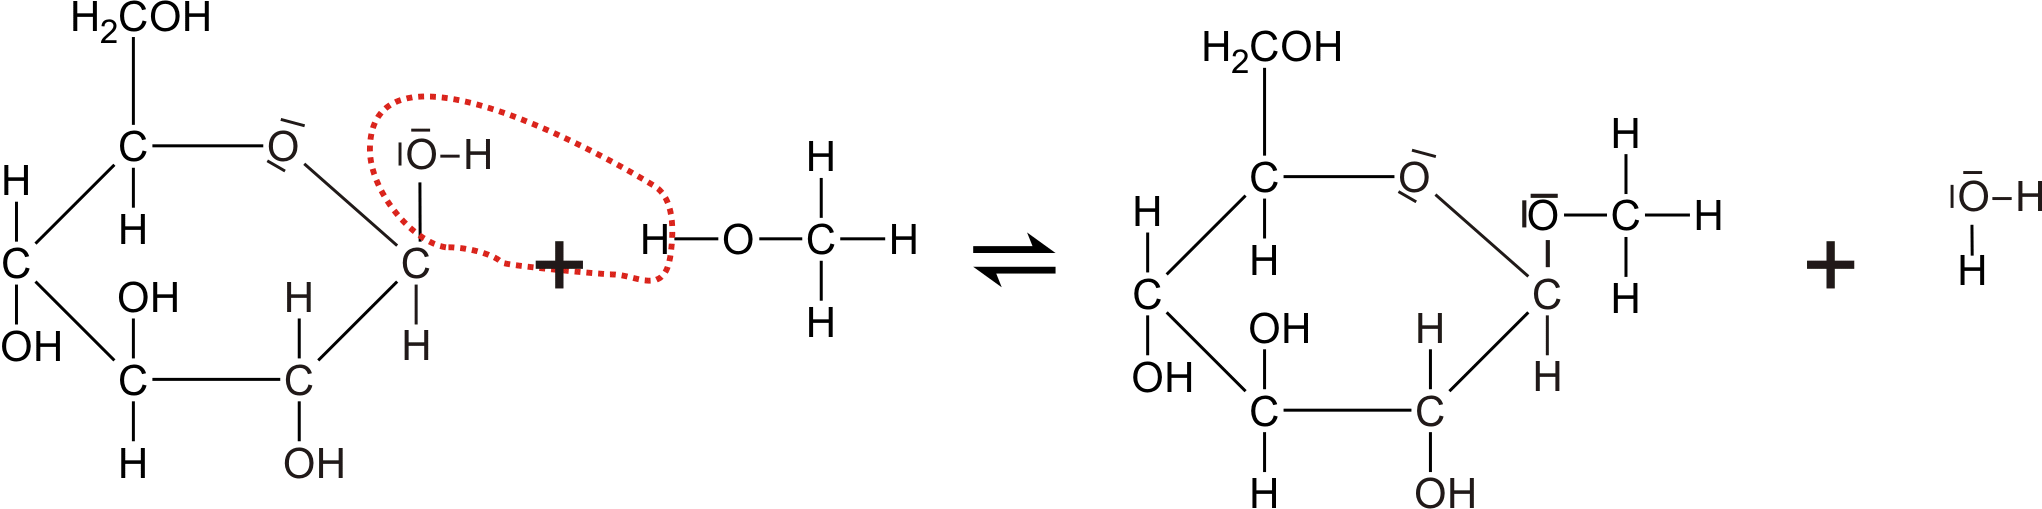 Reaktionsgleichung mit Lewis-Formel - Reaktion von Alkohol und Glucose unter Bildung eines Glycosids